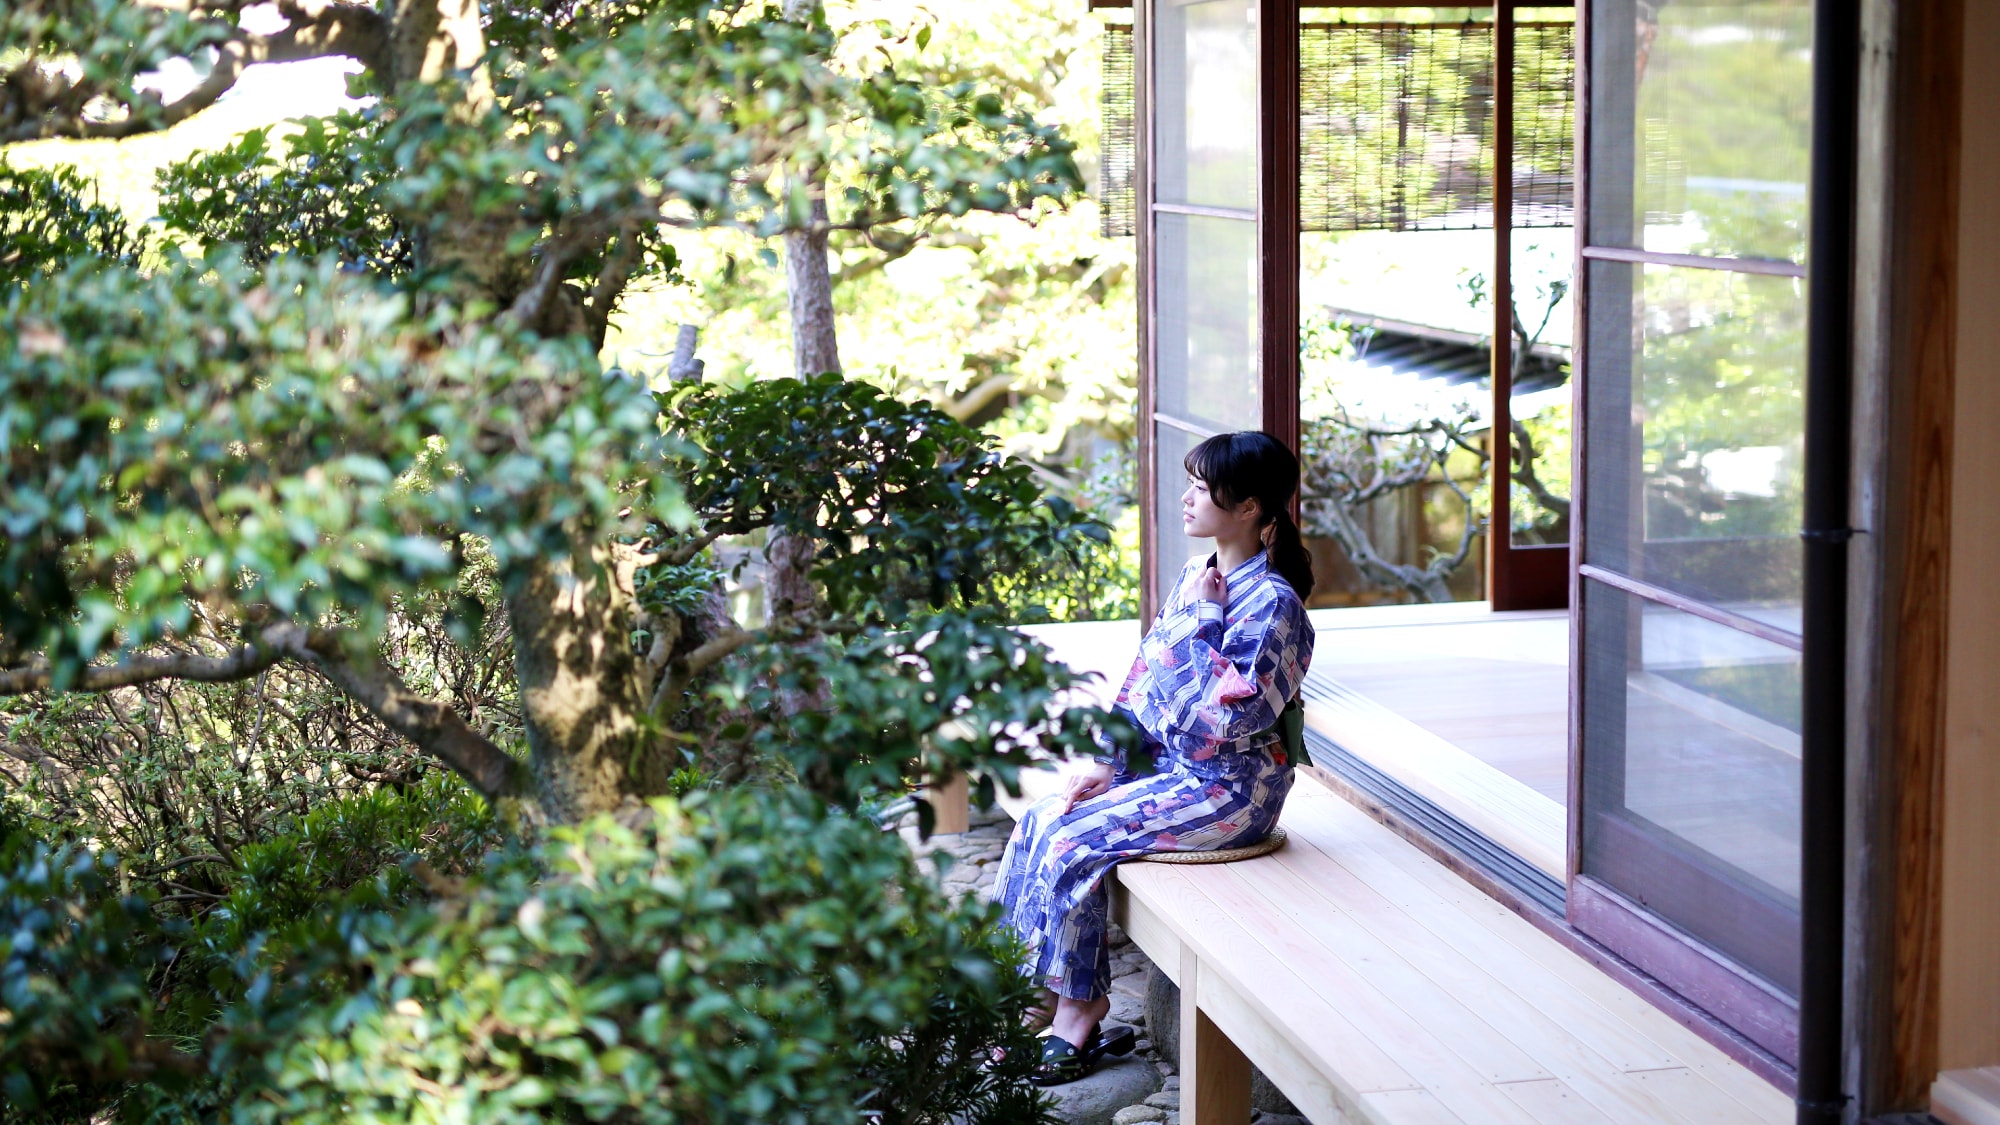 별저 '상생'고대에 위치해 파노라마 뷰의 일본 정원이 펼쳐집니다.